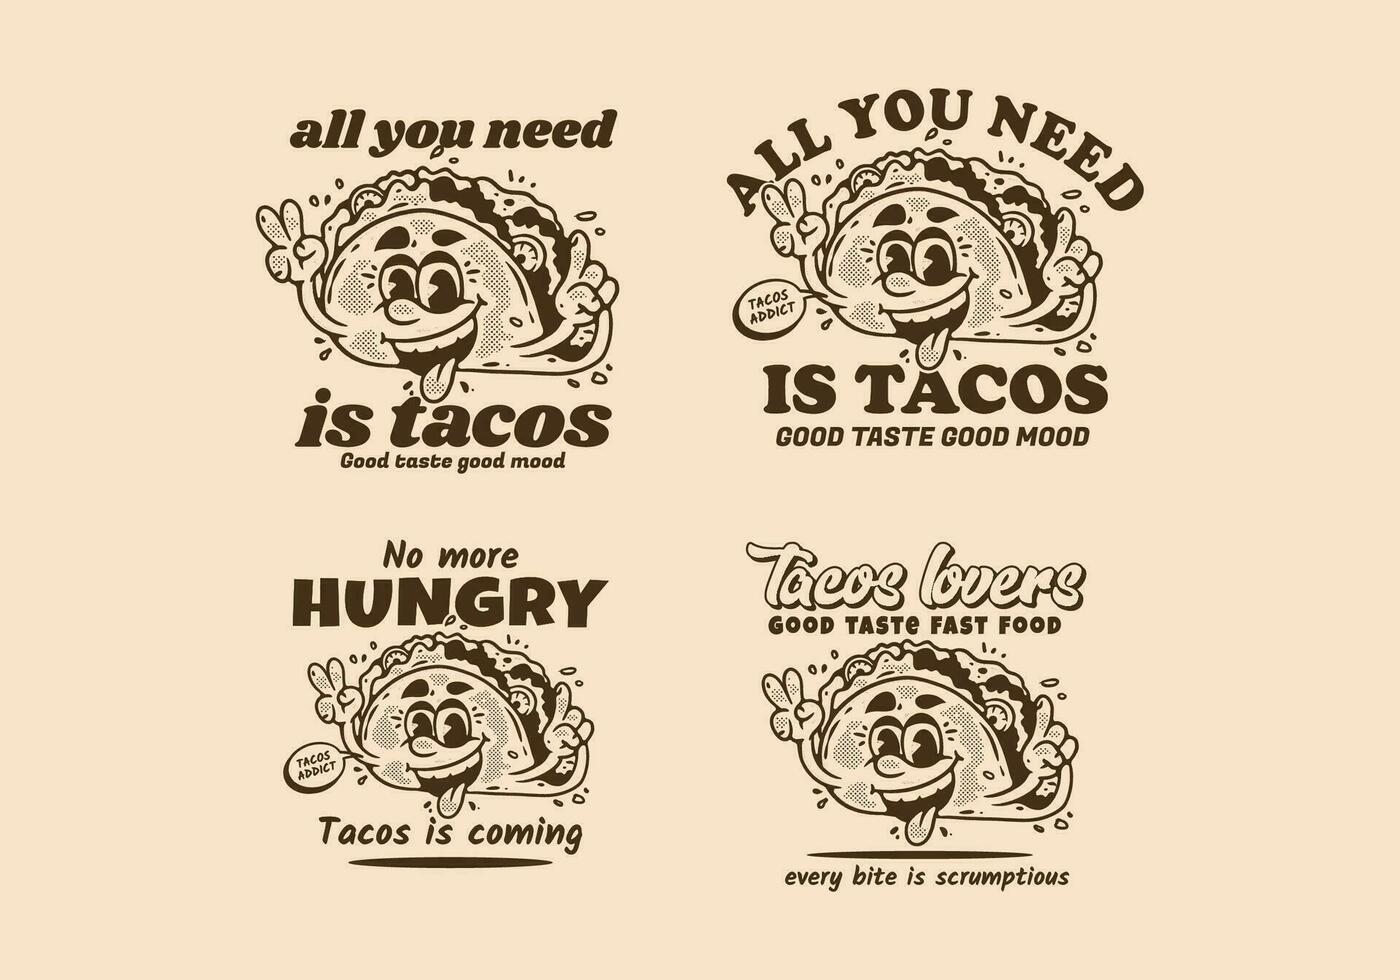 vier stijl van mascotte karakter illustratie van taco's met gelukkig gezicht vector